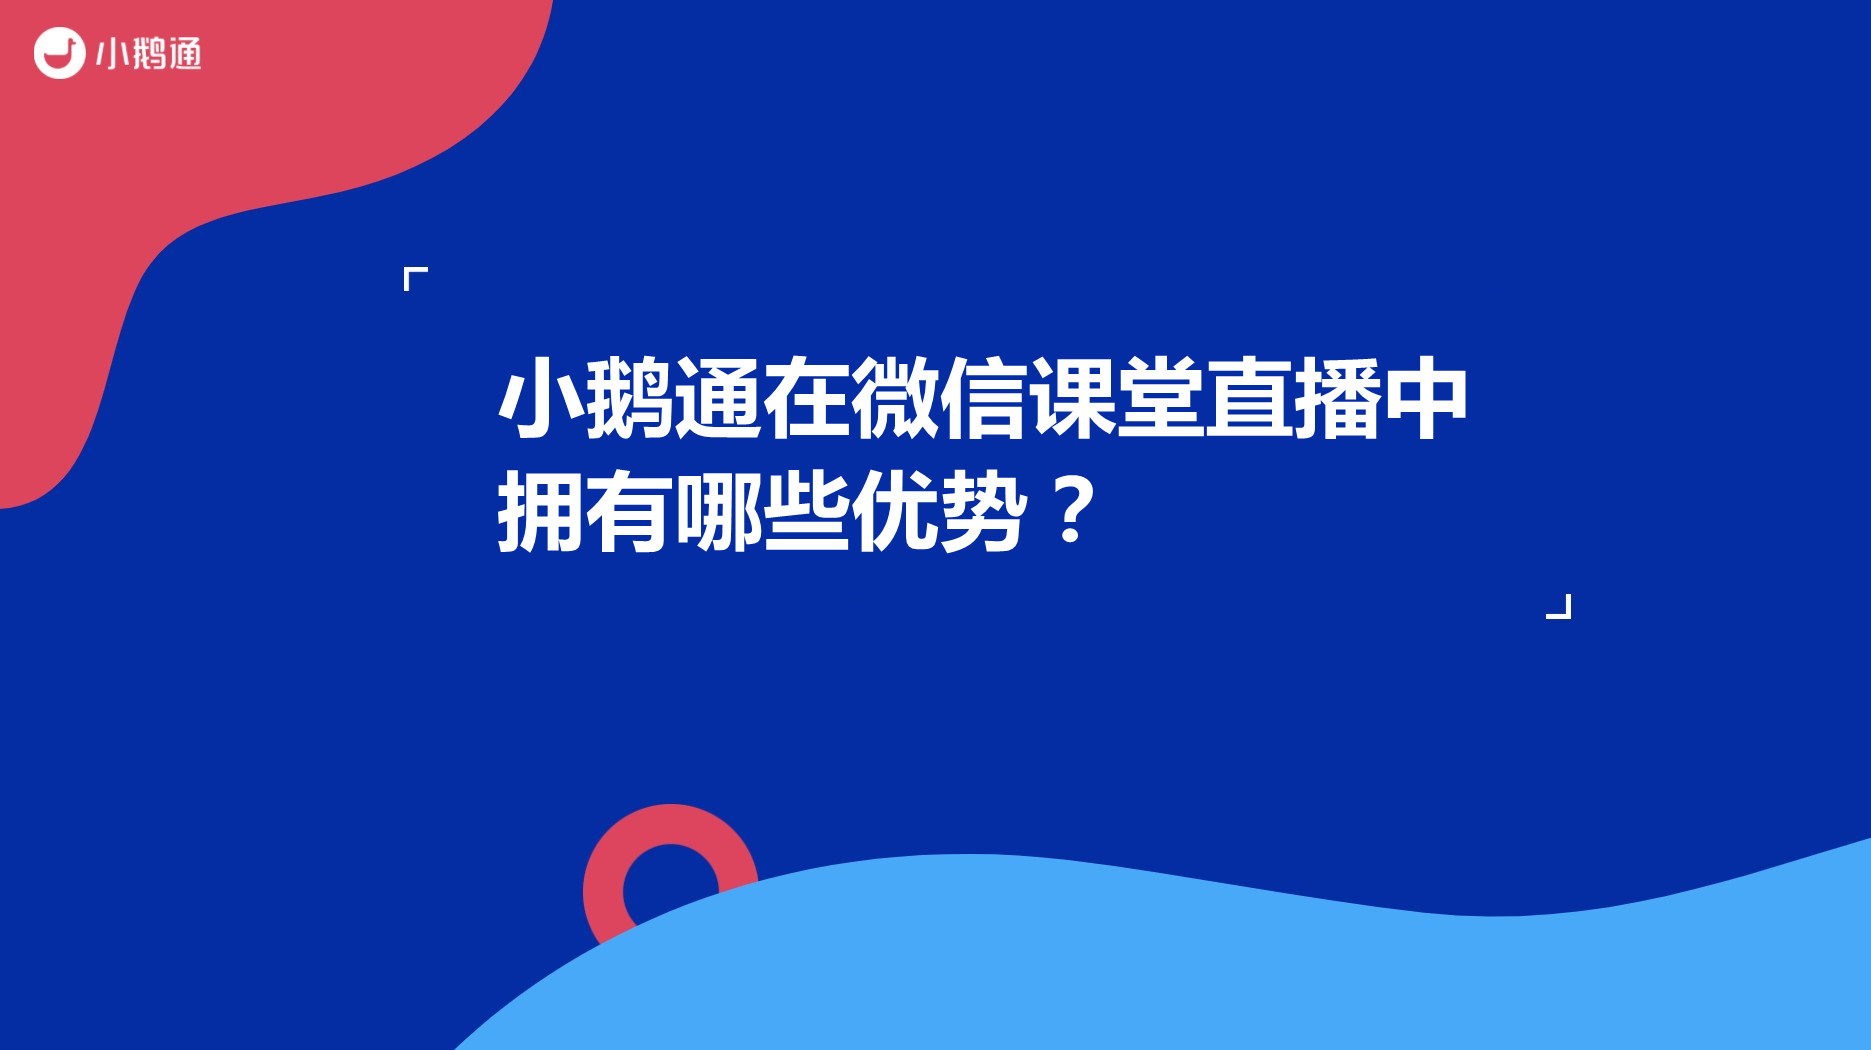 广东小鹅通在微信课堂直播中拥有哪些优势？